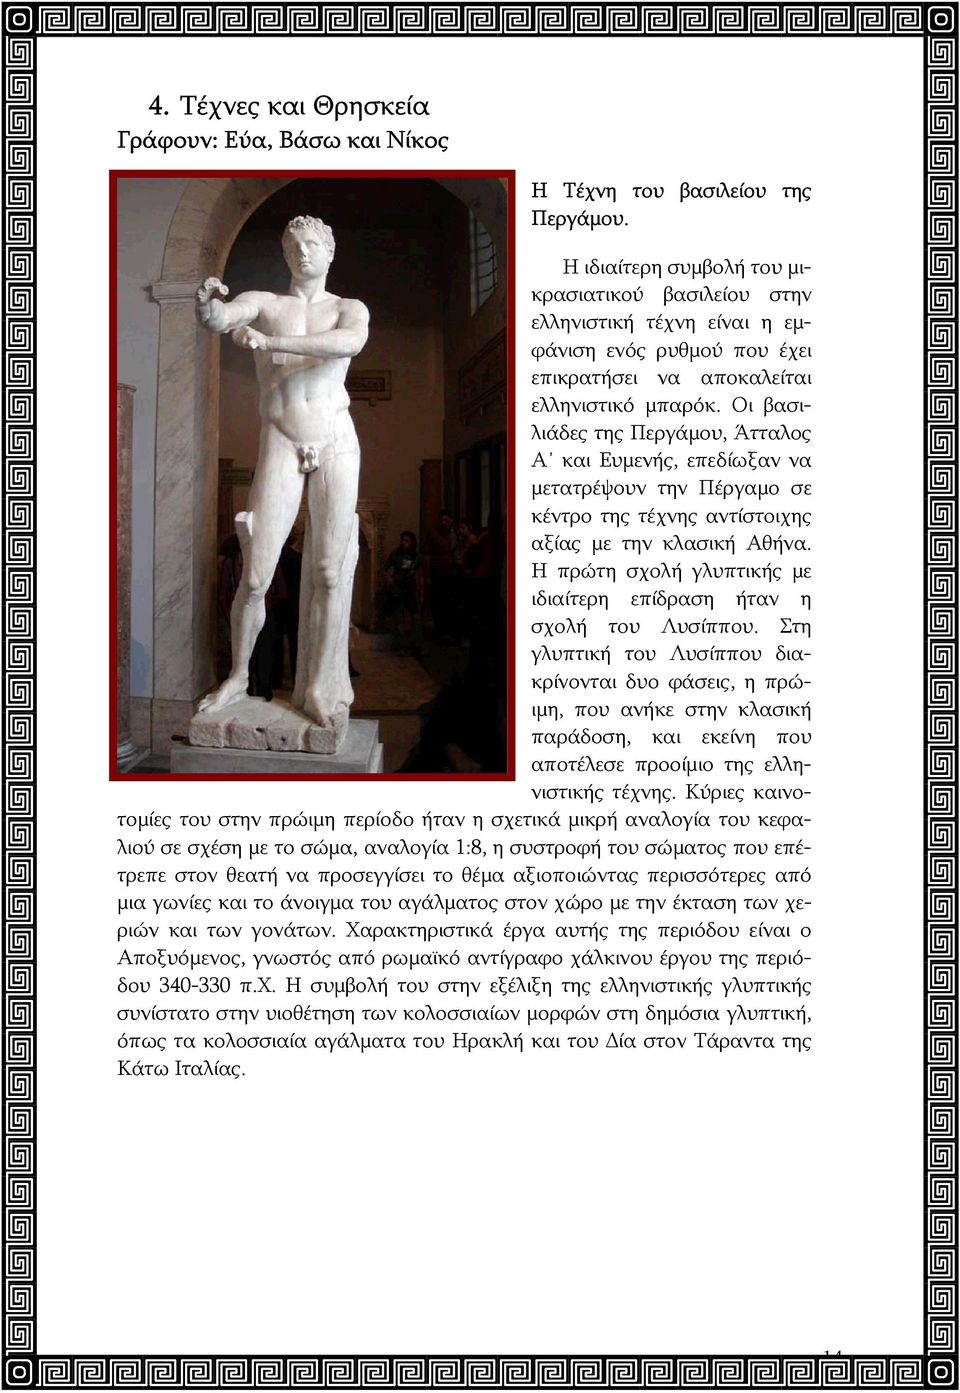 Οι βασιλιάδες της Περγάμου, Άτταλος Α και Ευμενής, επεδίωξαν να μετατρέψουν την Πέργαμο σε κέντρο της τέχνης αντίστοιχης αξίας με την κλασική Αθήνα.